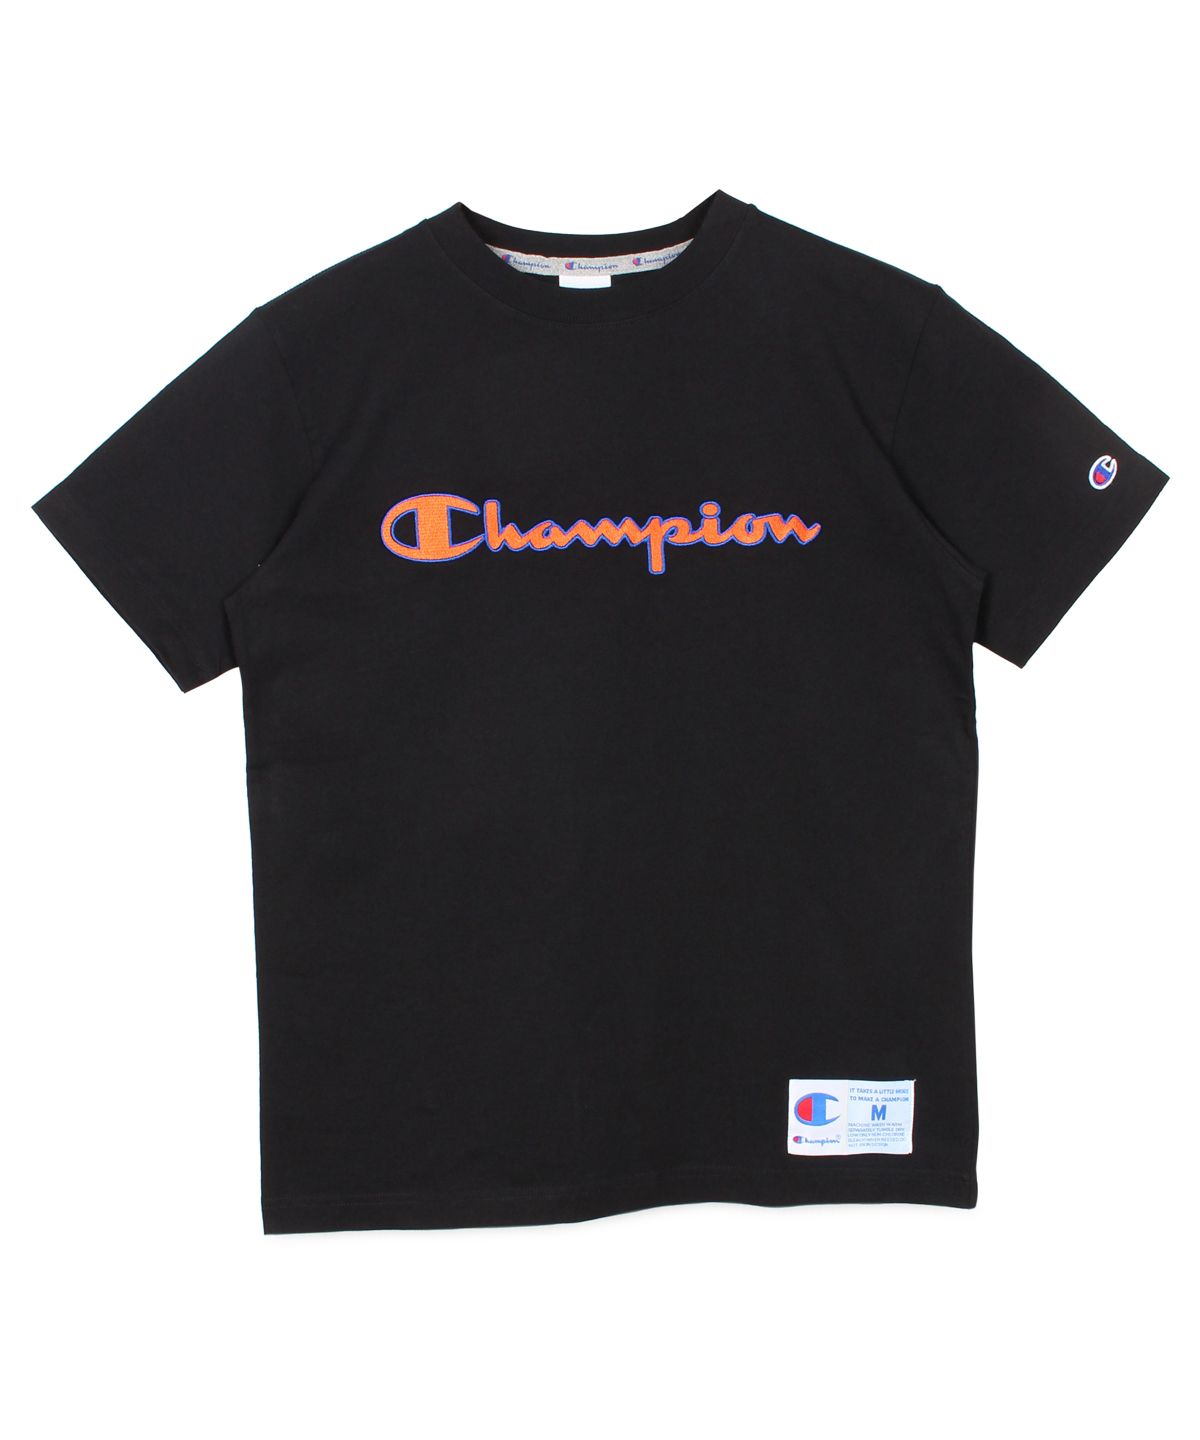 チャンピオン(Champion) |チャンピオン Champion Tシャツ 半袖 メンズ 